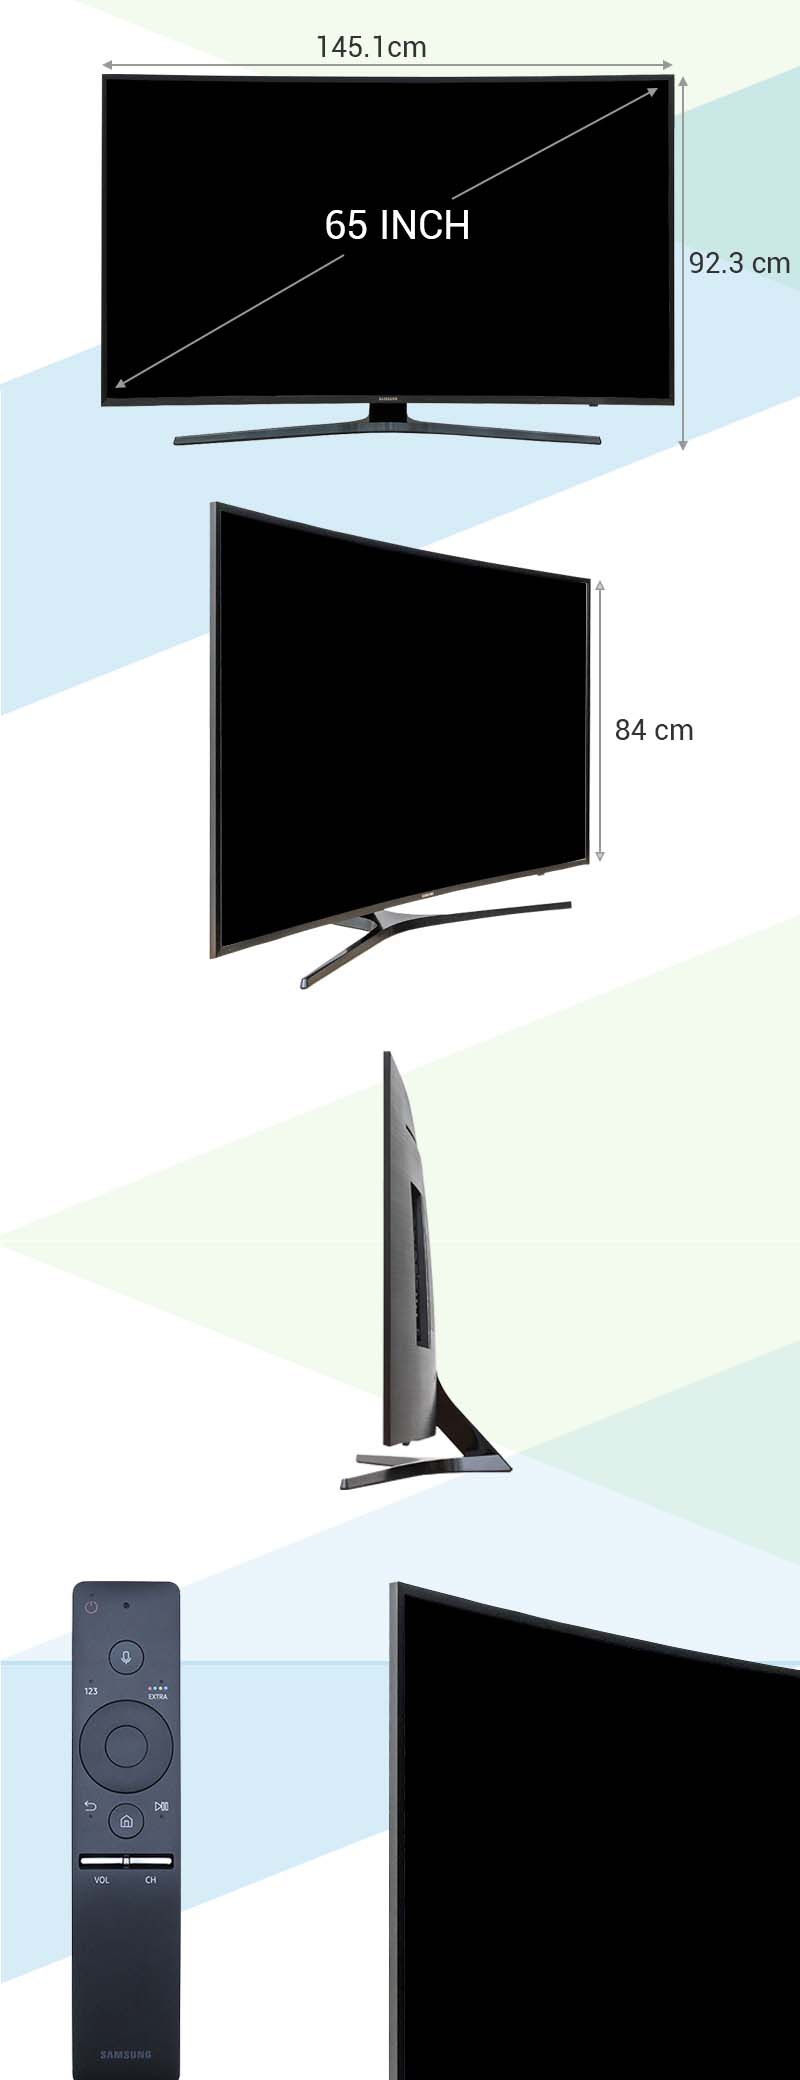 Smart Tivi Cong Samsung 65 inch UA65KU6500 - Kích thước TV